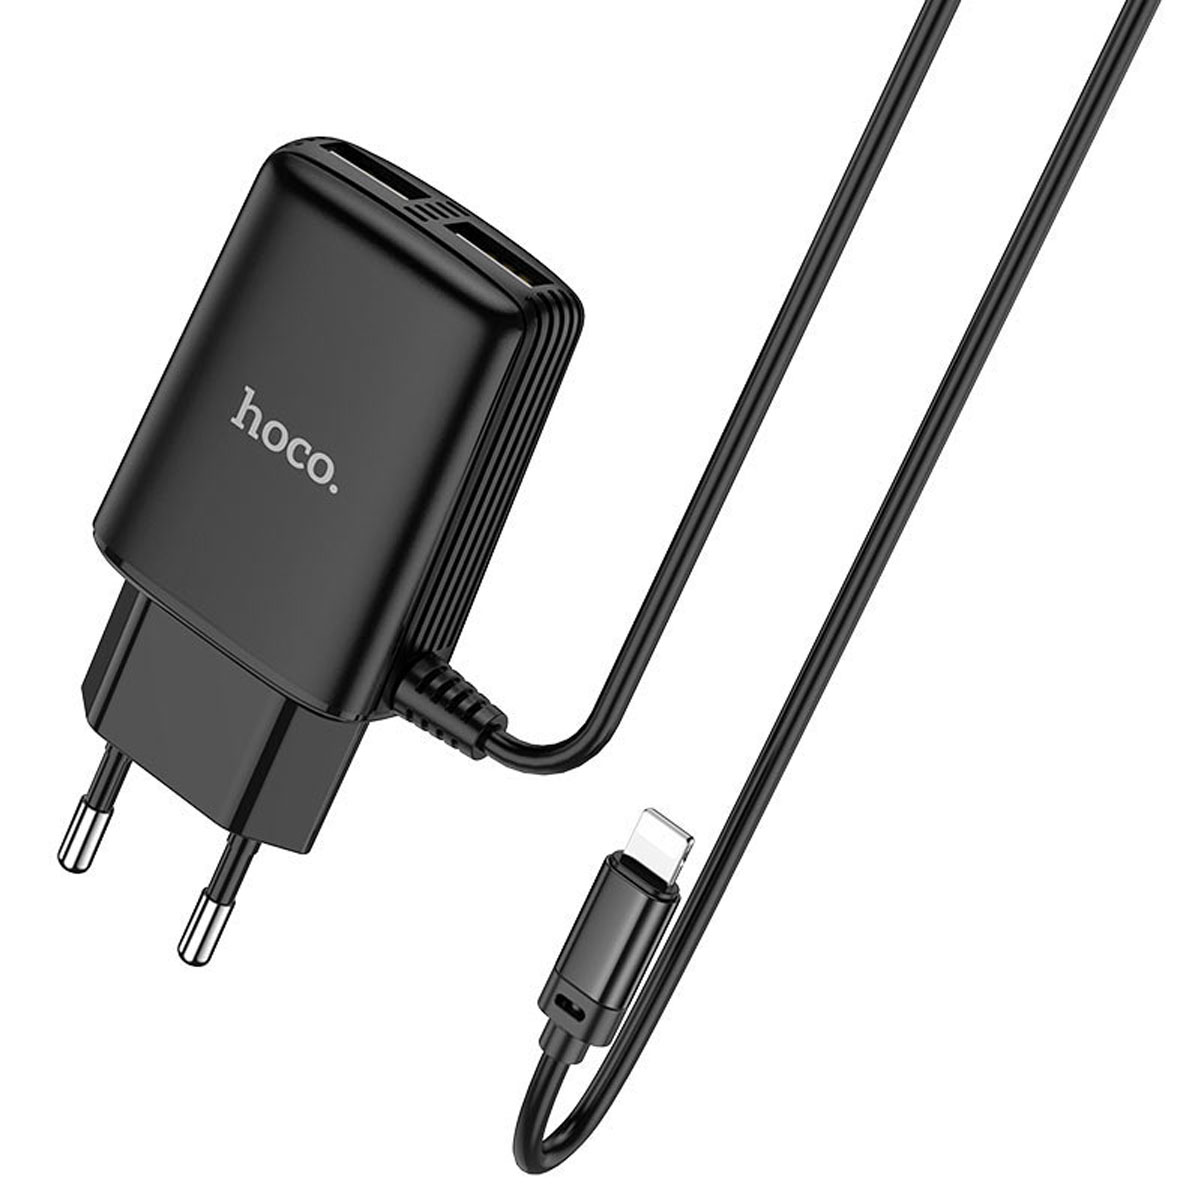 СЗУ (Сетевое зарядное устройство) HOCO C82A Real power со встроенным кабелем Lightning 8 pin, 2.4A, 2 USB, длина 1 метр, цвет черный